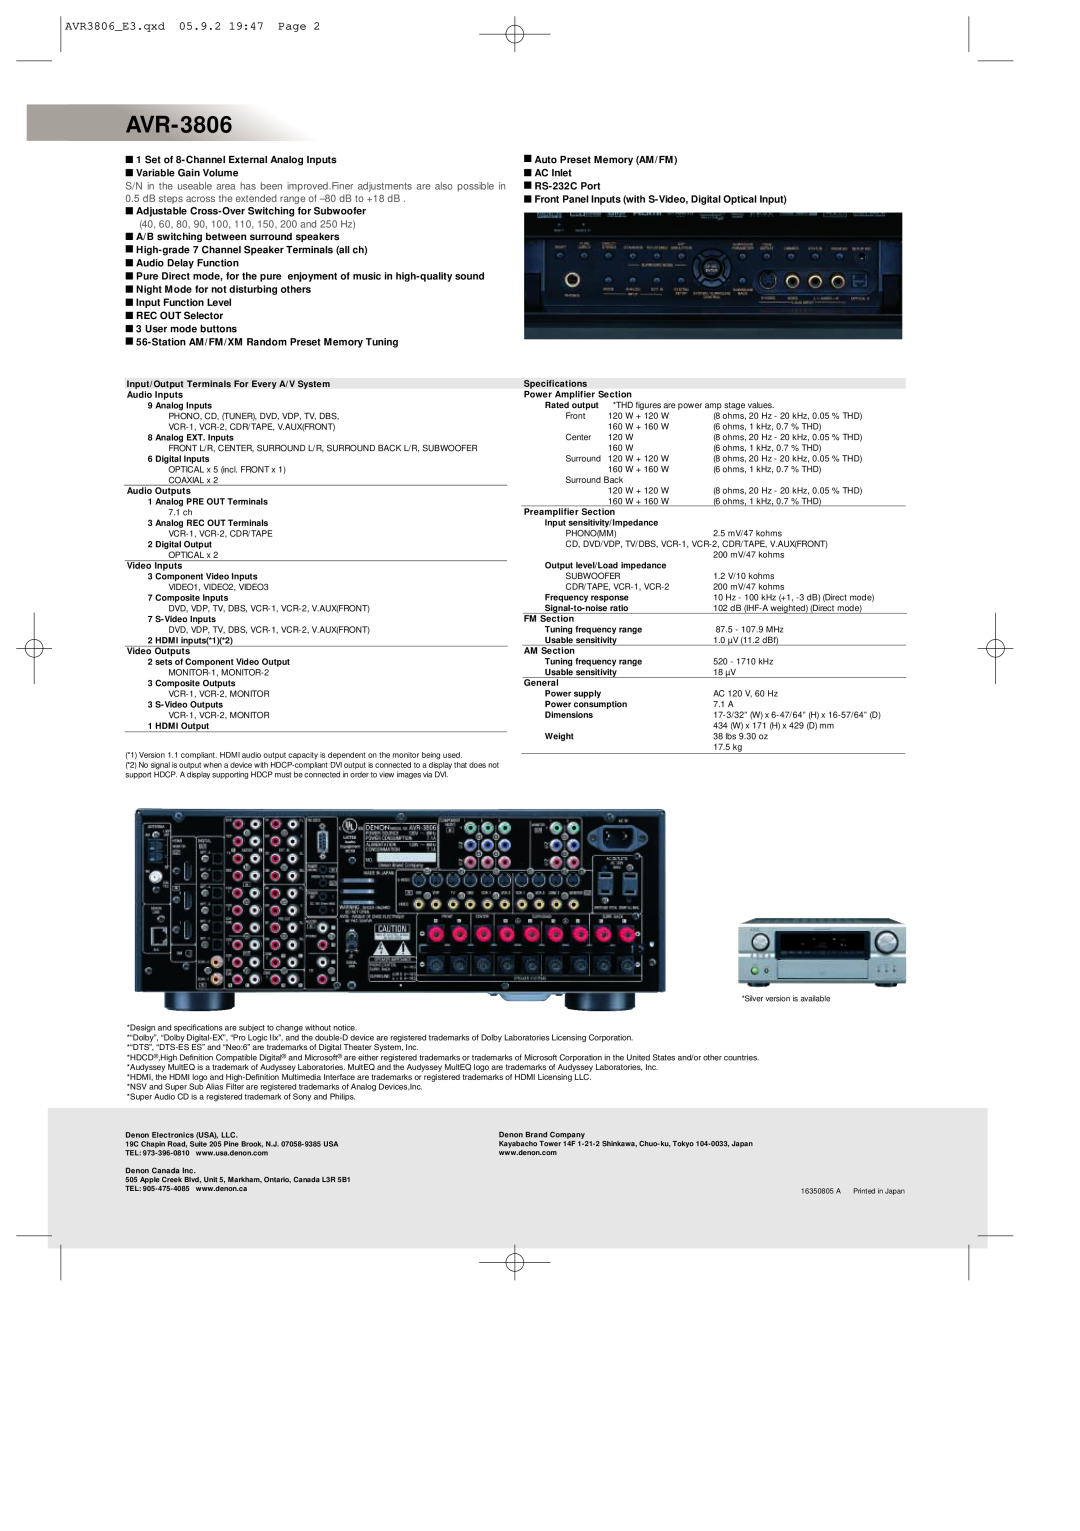 Denon AVR-3806 manual AVR3806 E3.qxd 05.9.2 19 47 Page 